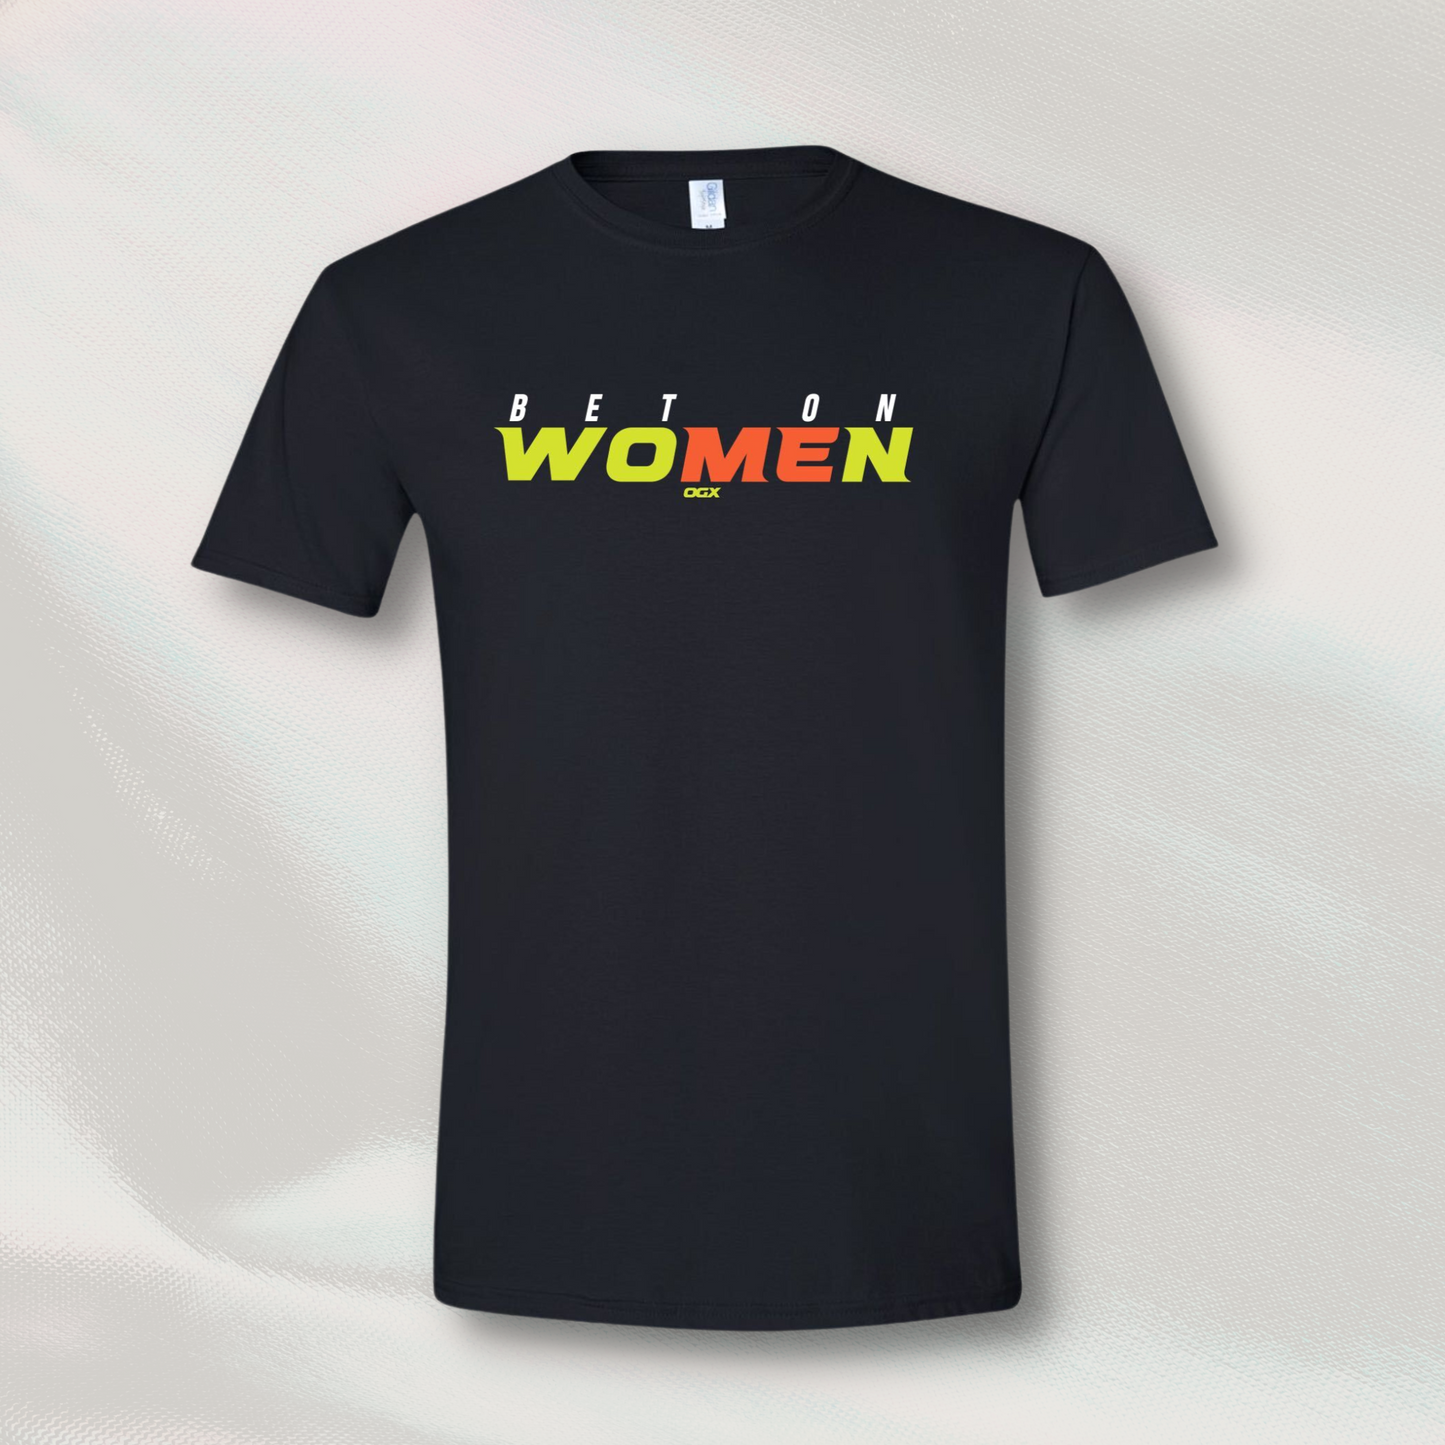 Bet on Women Shirt